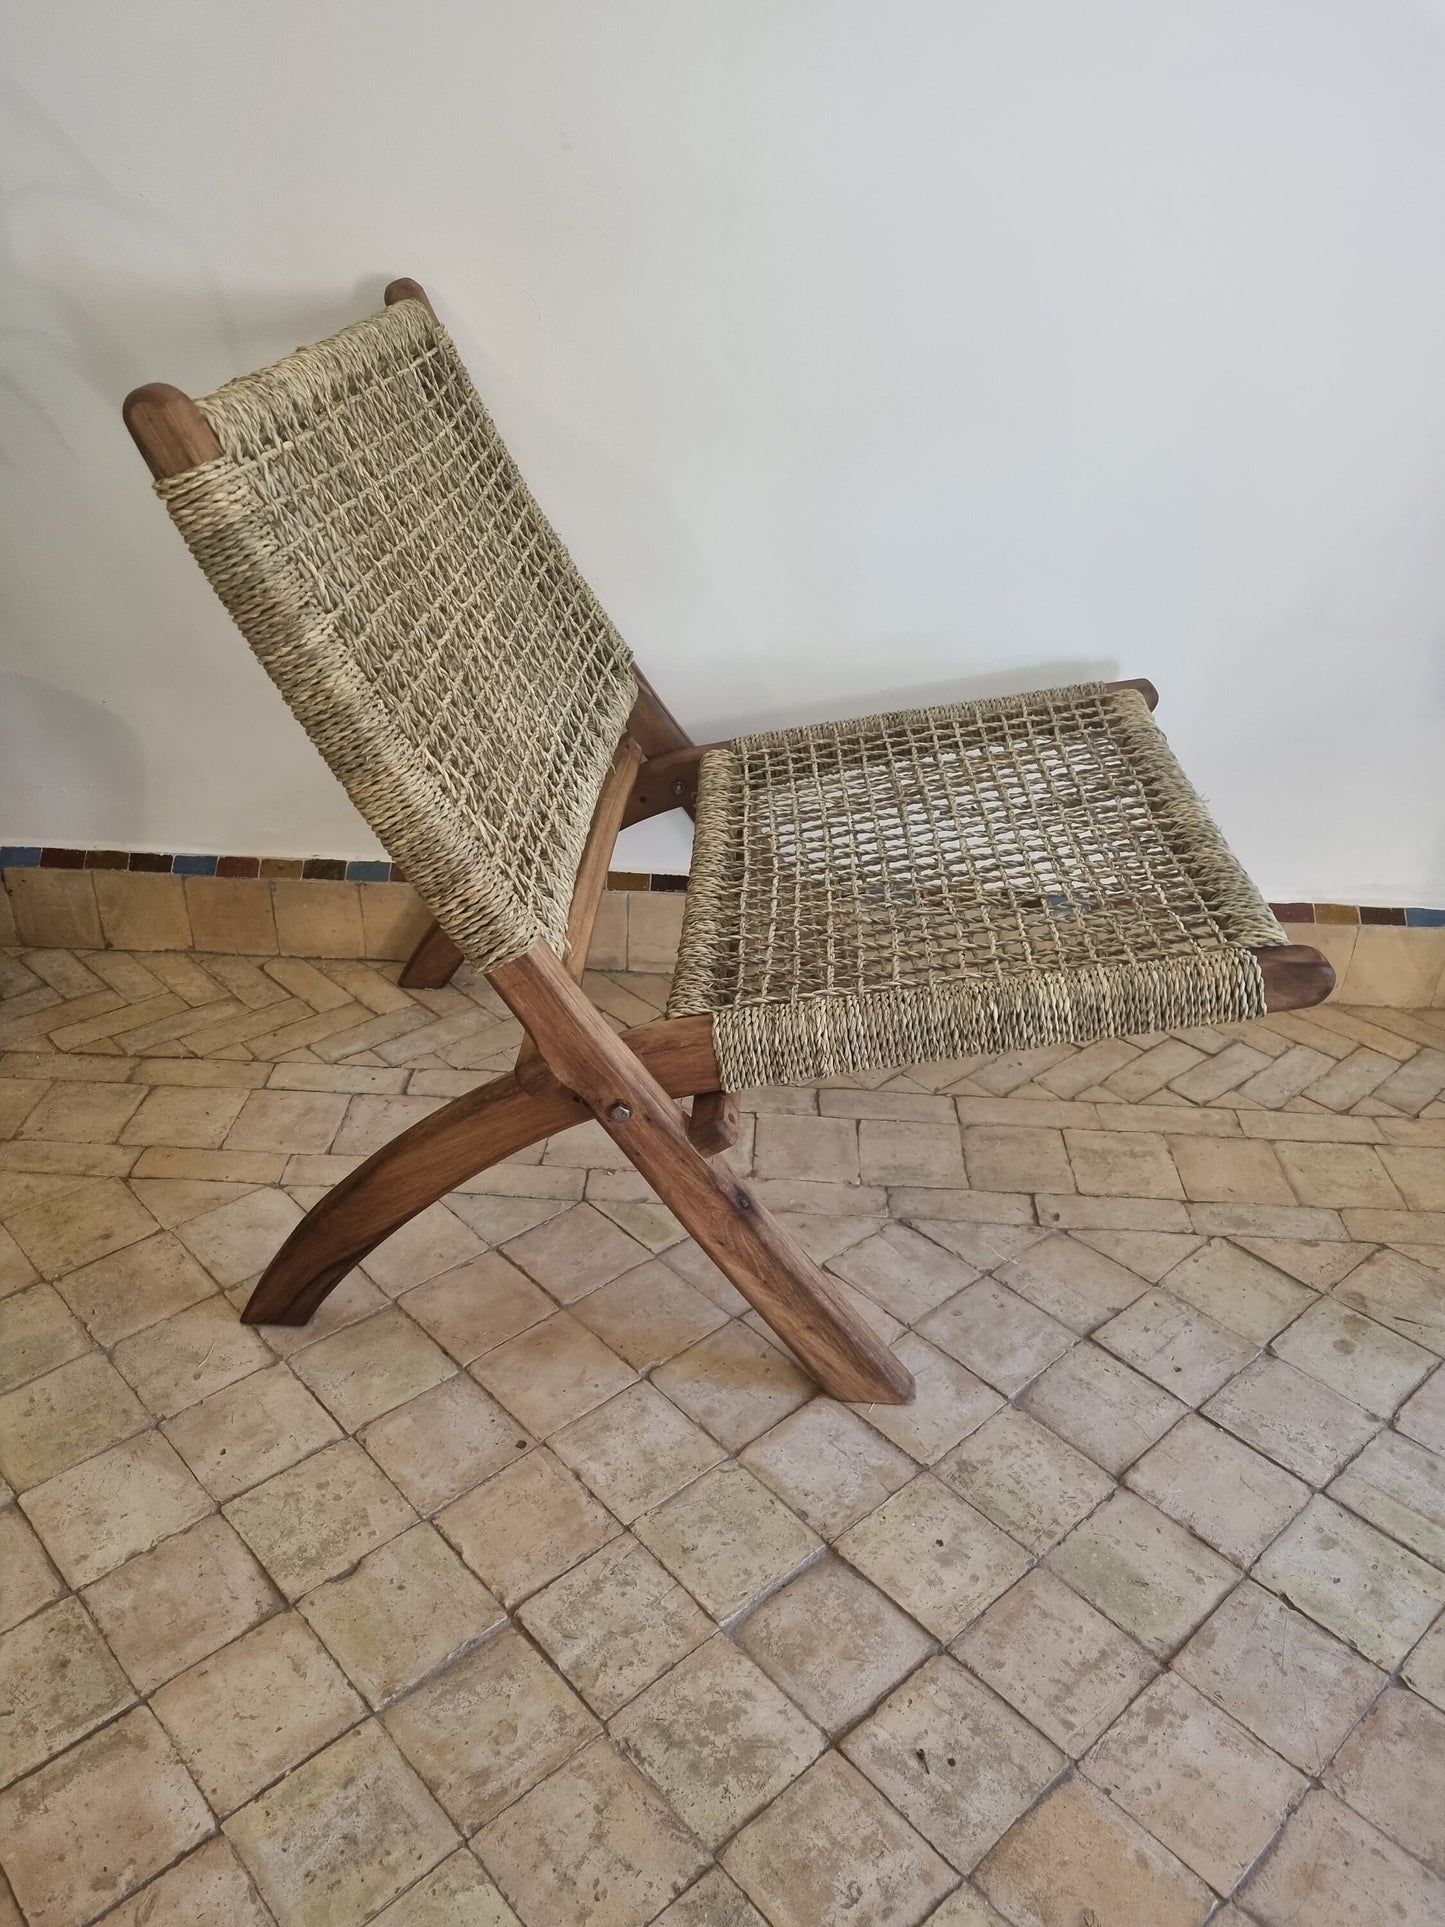 Siège en noyer vintage, un fauteuil en bois au charme rétro.